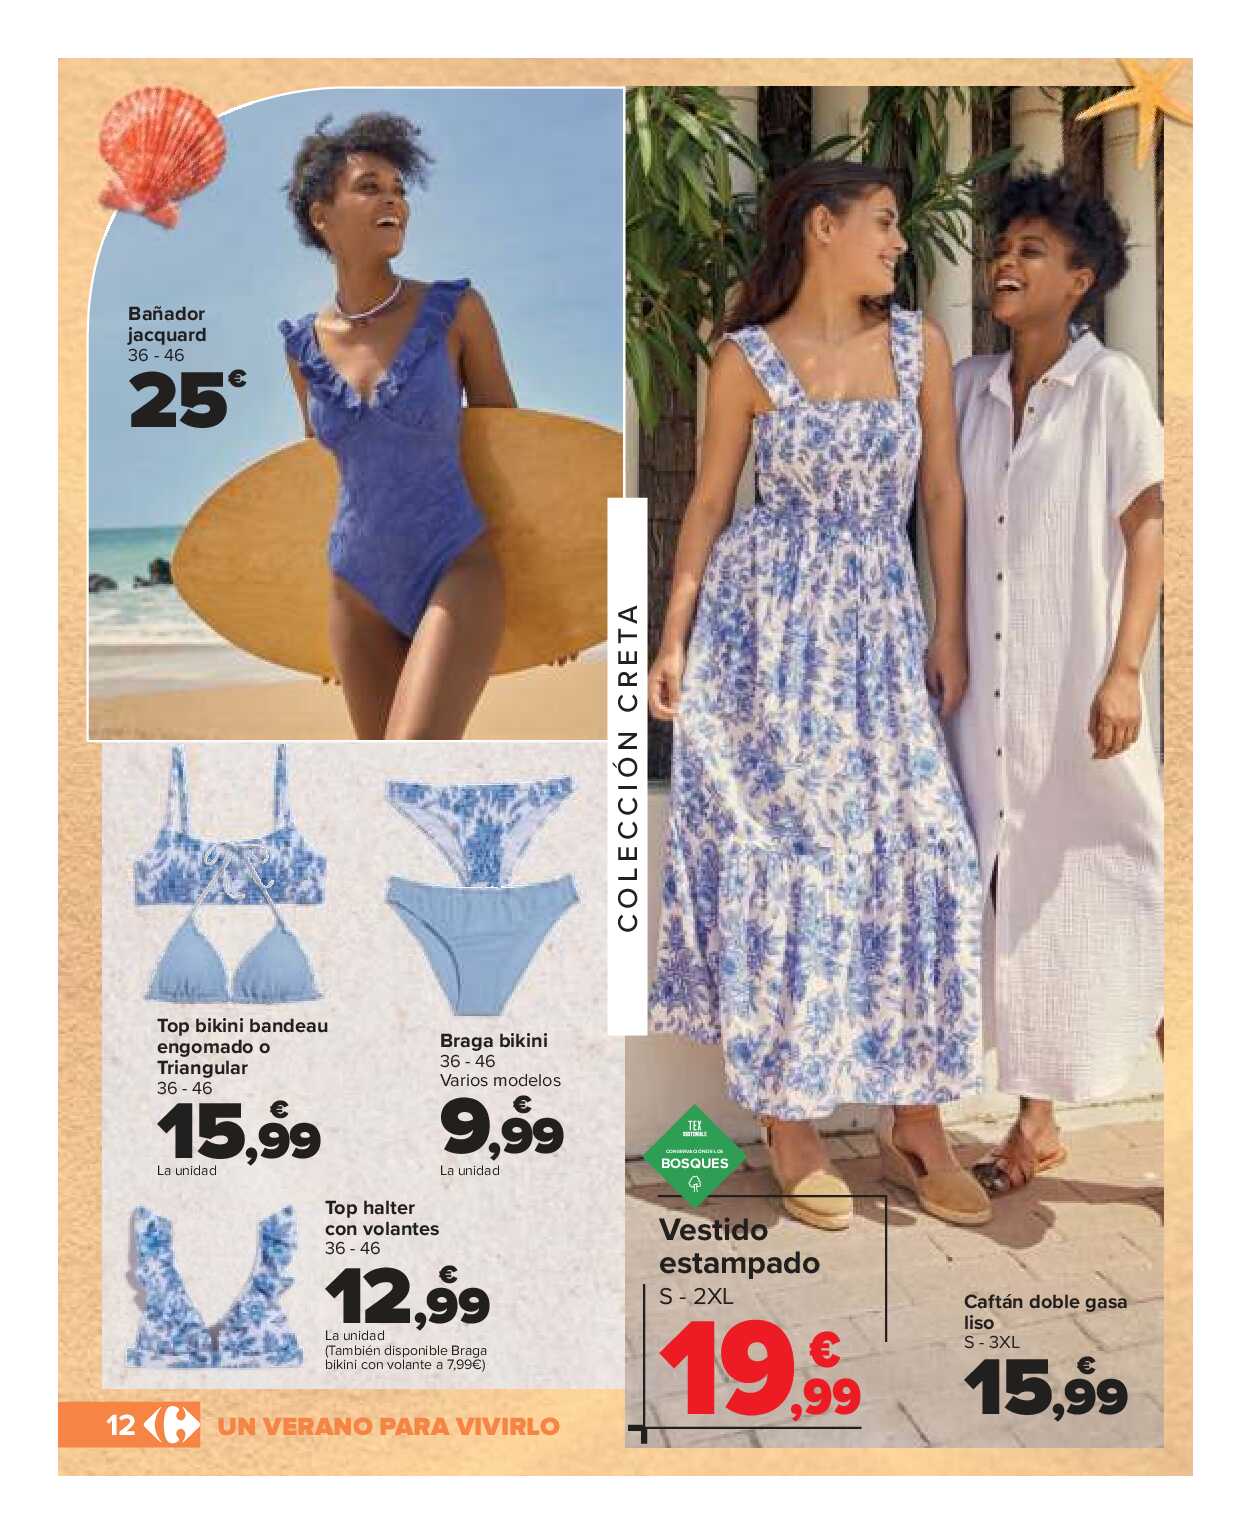 Catálogo de baño: un verano para vivirlo Carrefour. Página 12